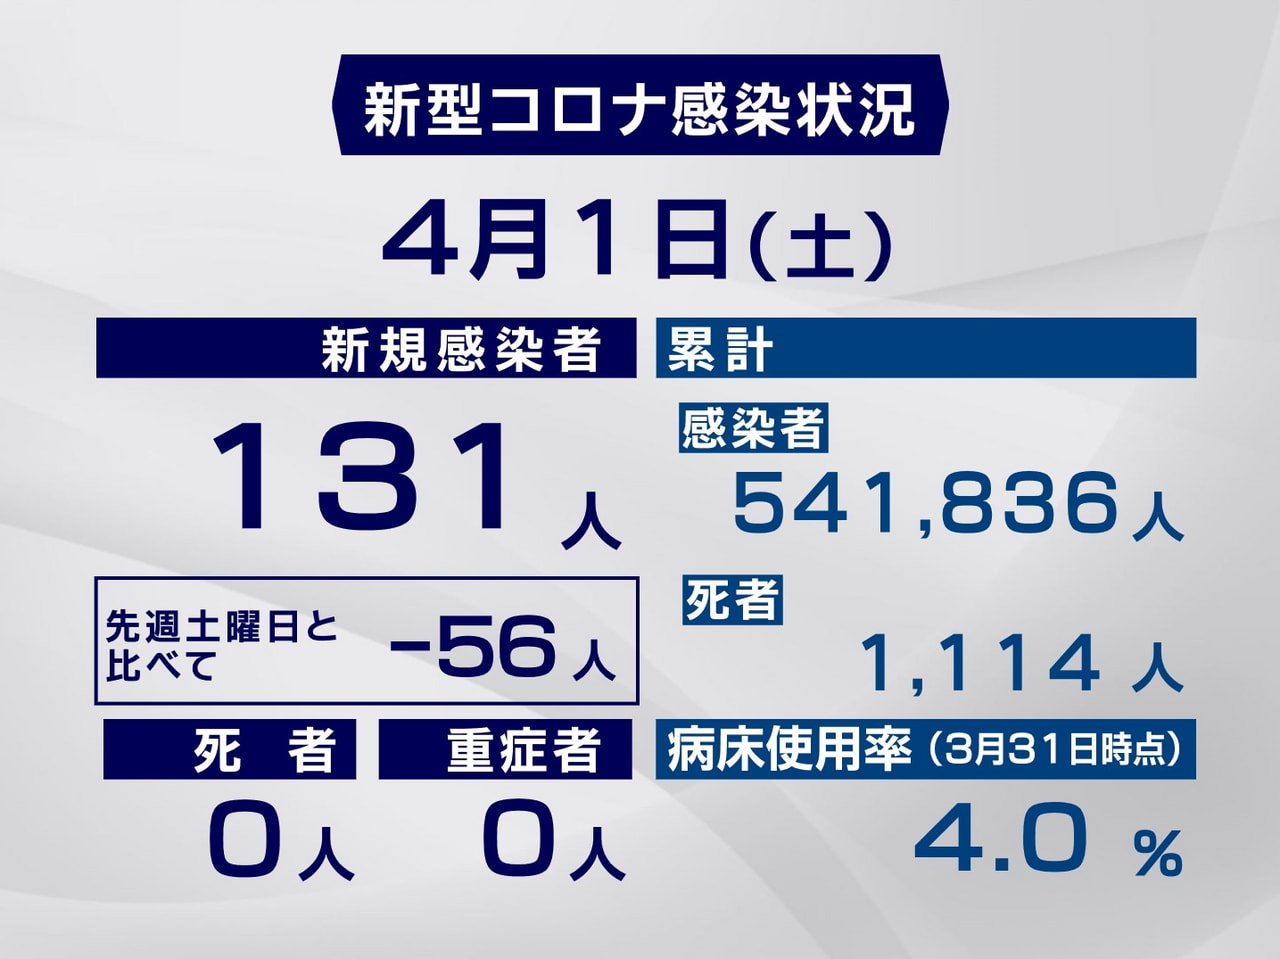 岐阜県と岐阜市は１日、新型コロナウイルスの感染者が新たに１３１人確認されたと発表...